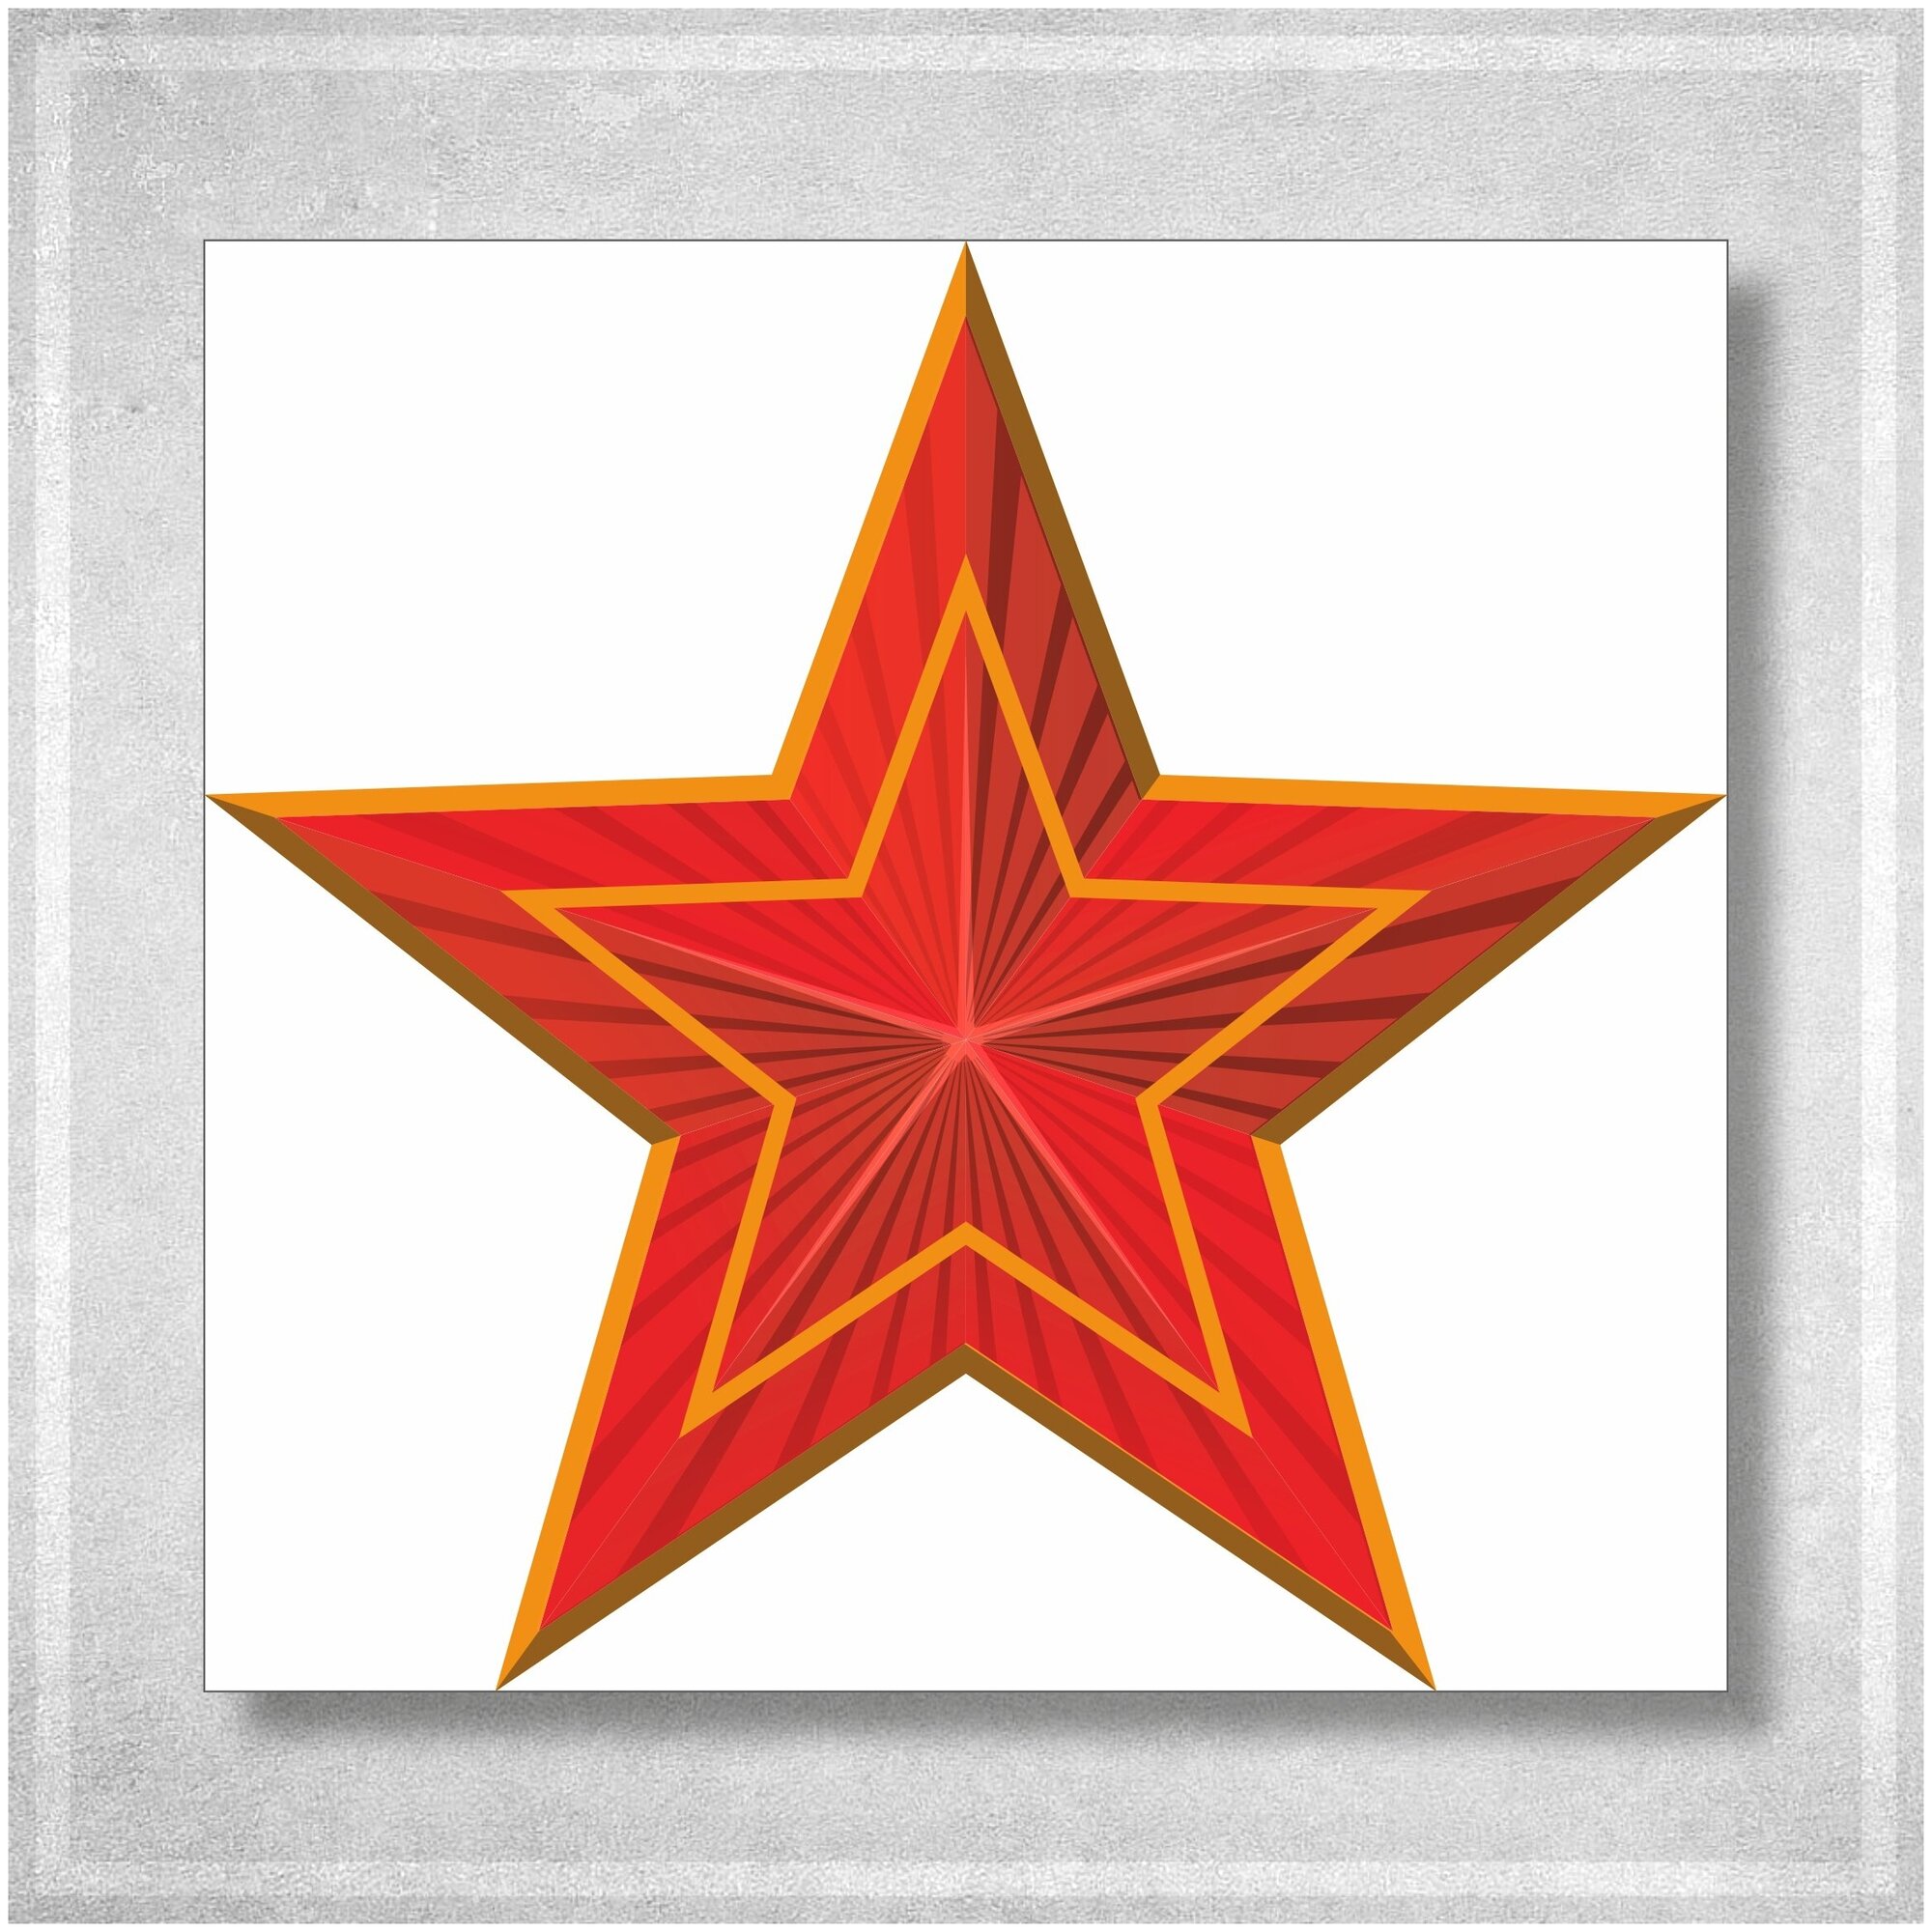 Наклейка со звездой на белой плёнке к 9 мая Дню Победы / 50x50 см.